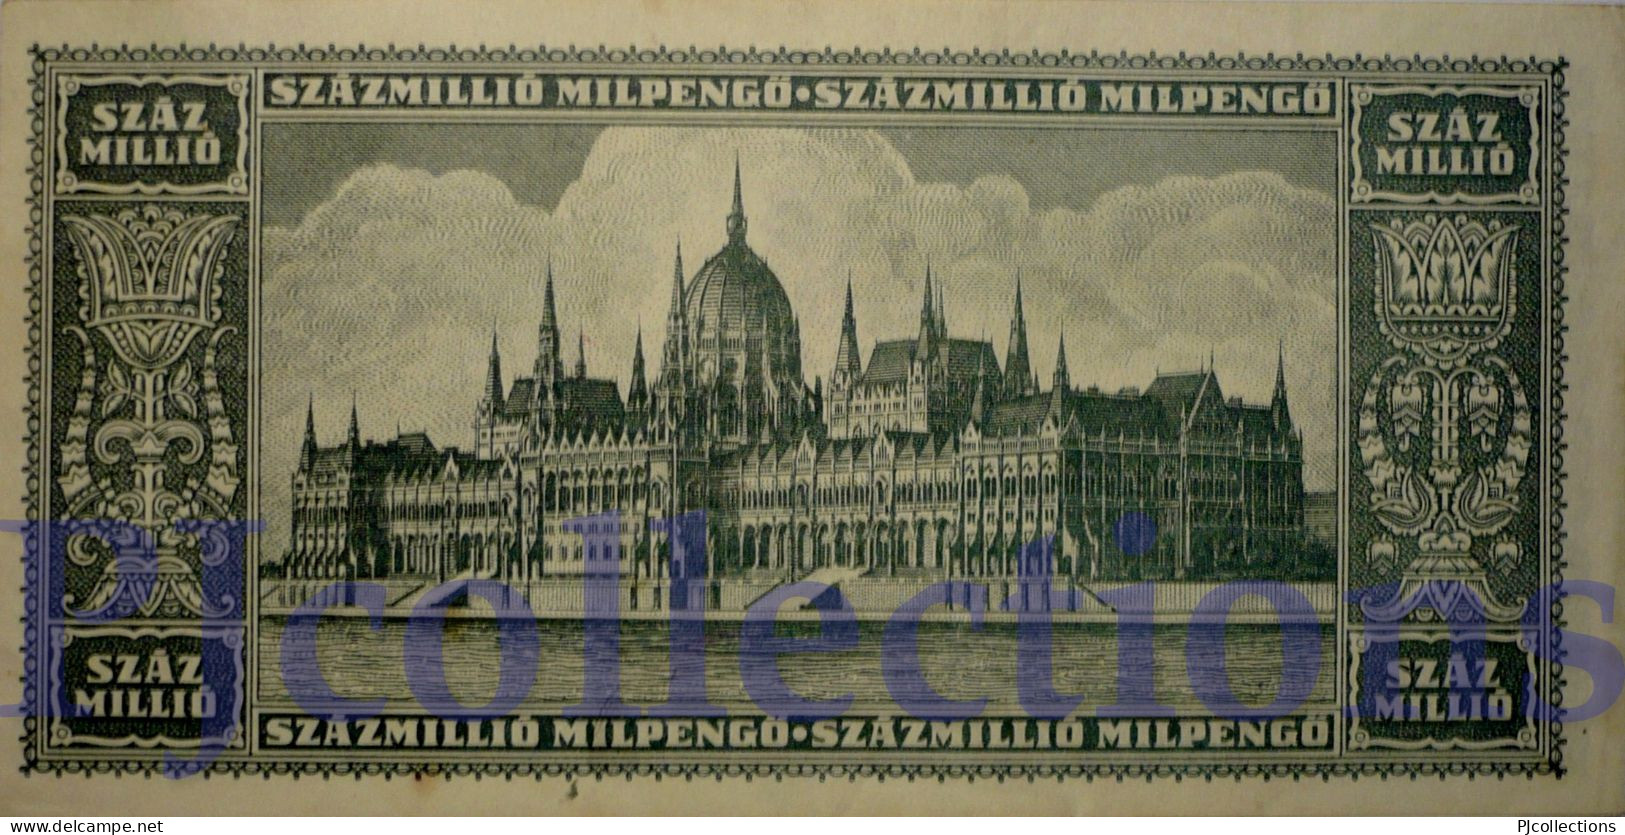 HUNGARY 100 MILLION MILPENGO 1946 PICK 130 AU - Hongrie